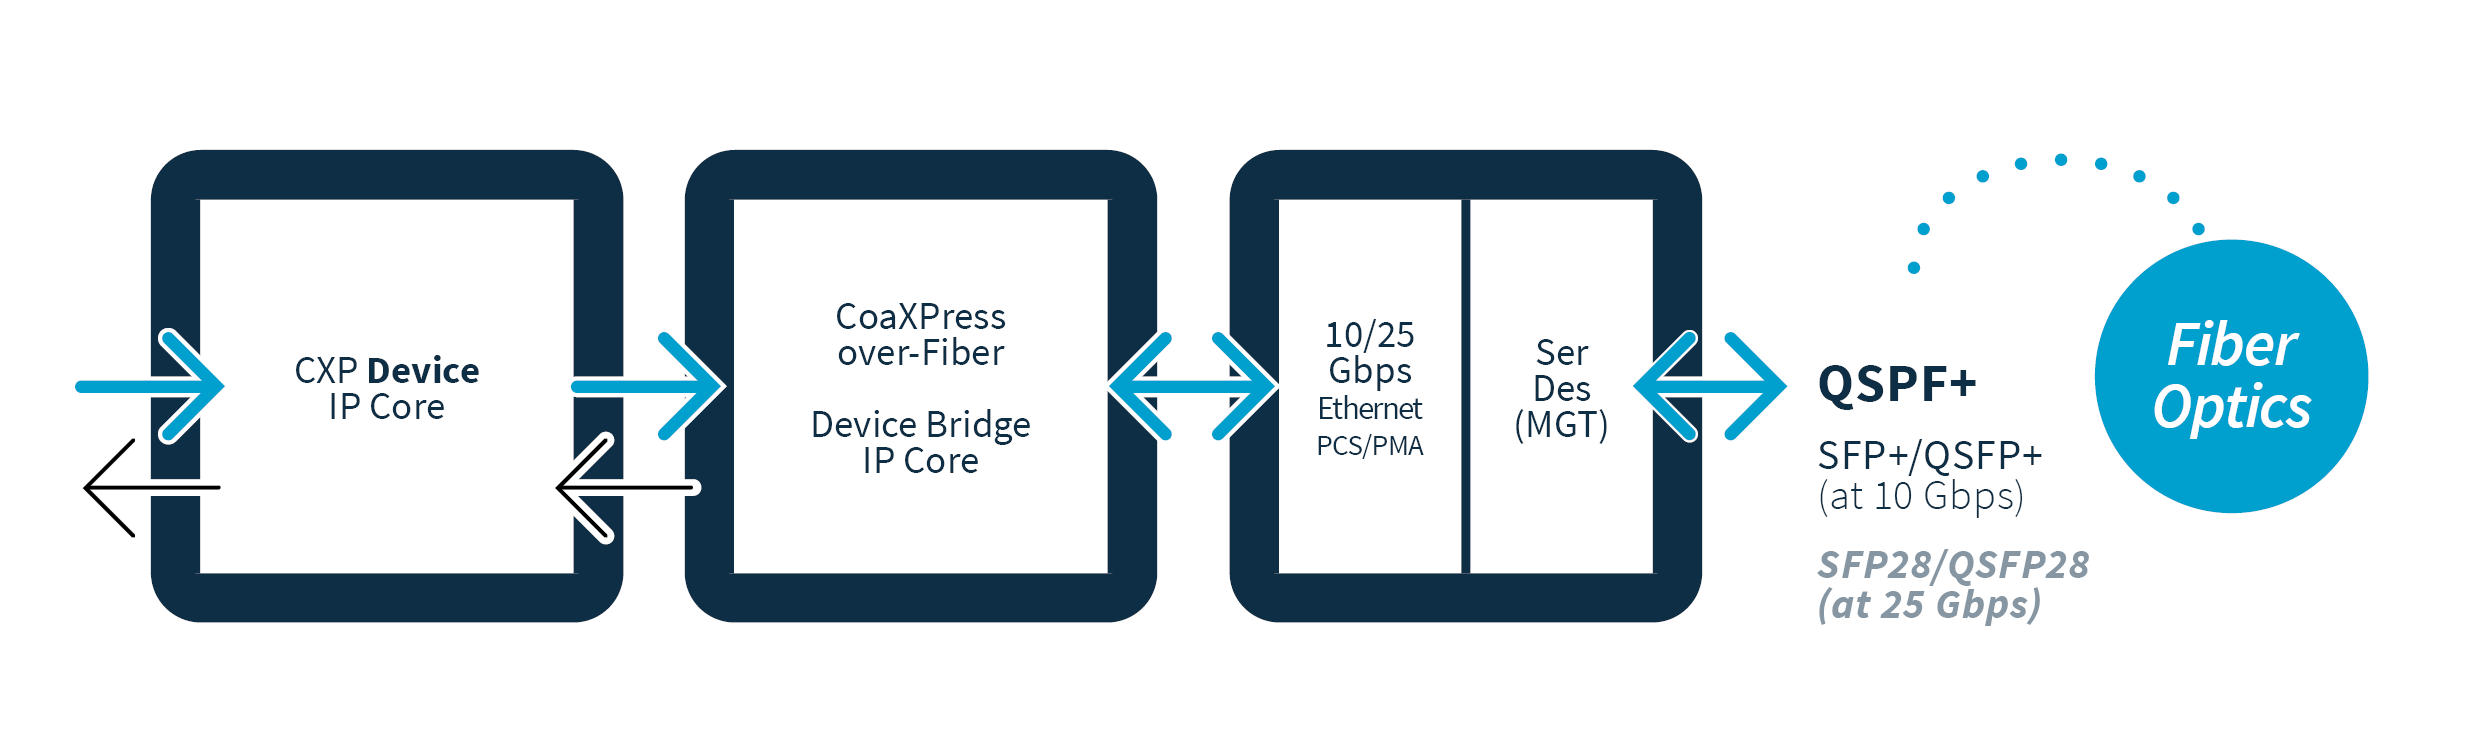 Beschreibung des CoaXPress-over-Fiber Bridge-IP-Core